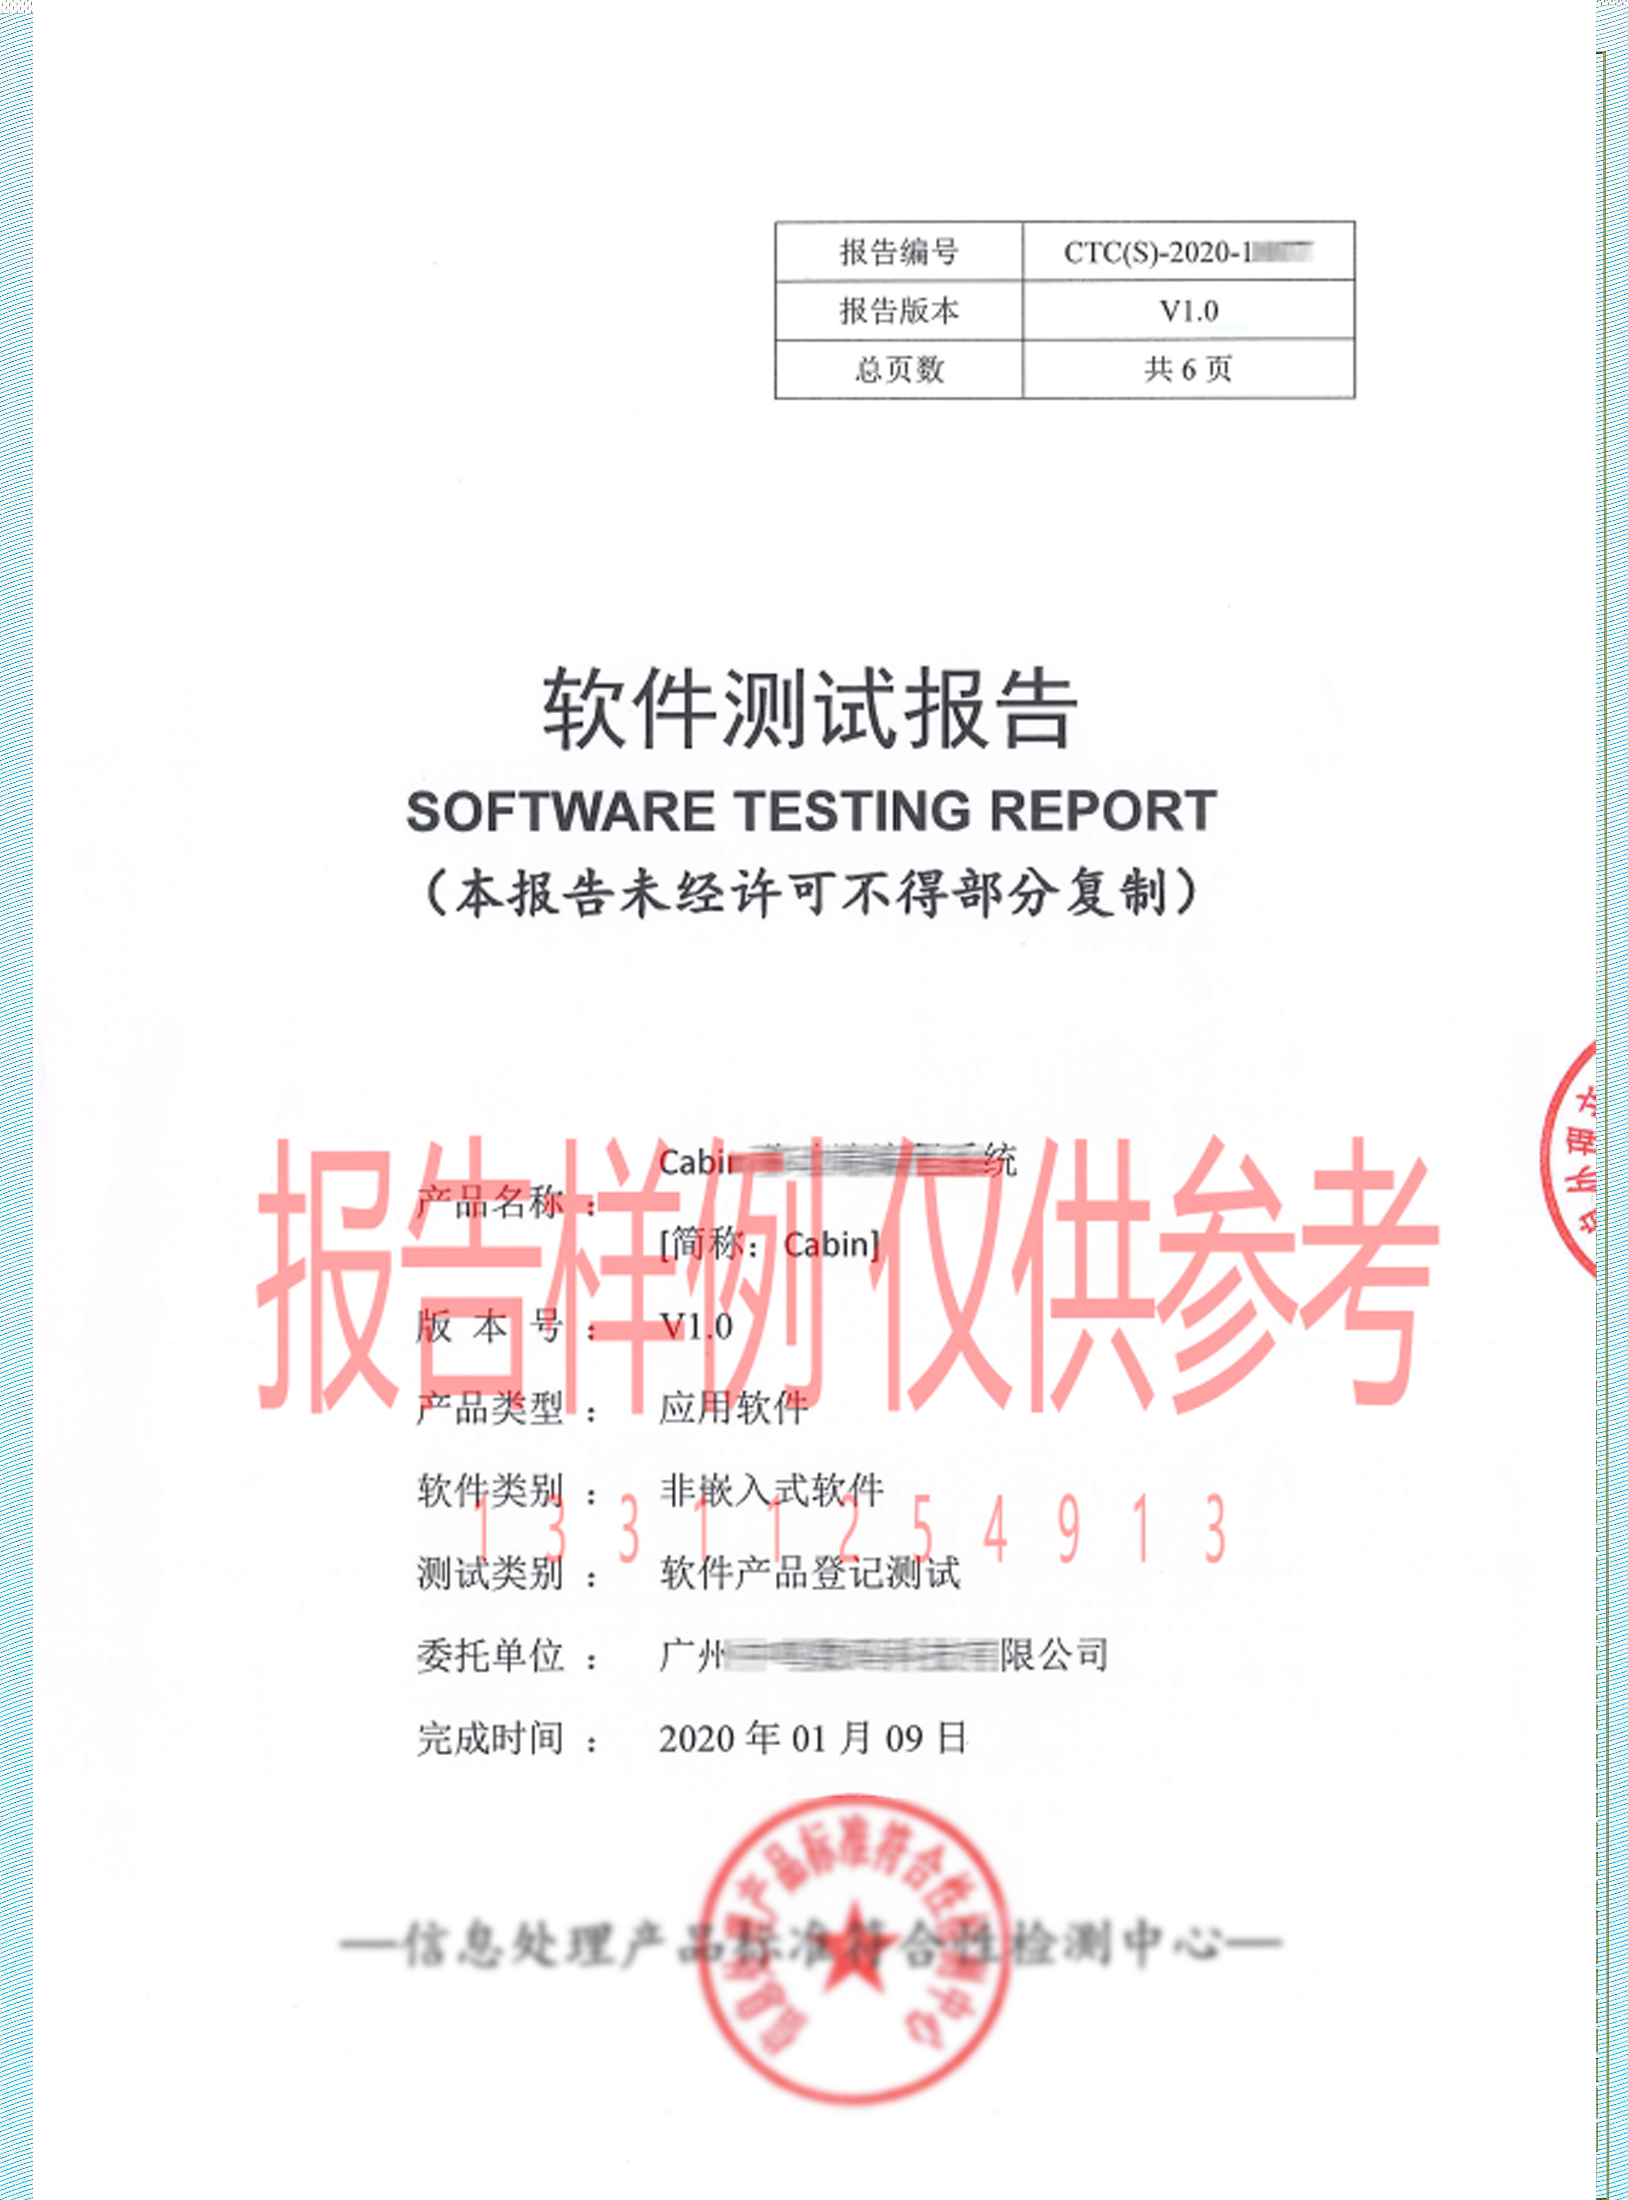 福建软件测试 第三方软件测试 安全便捷